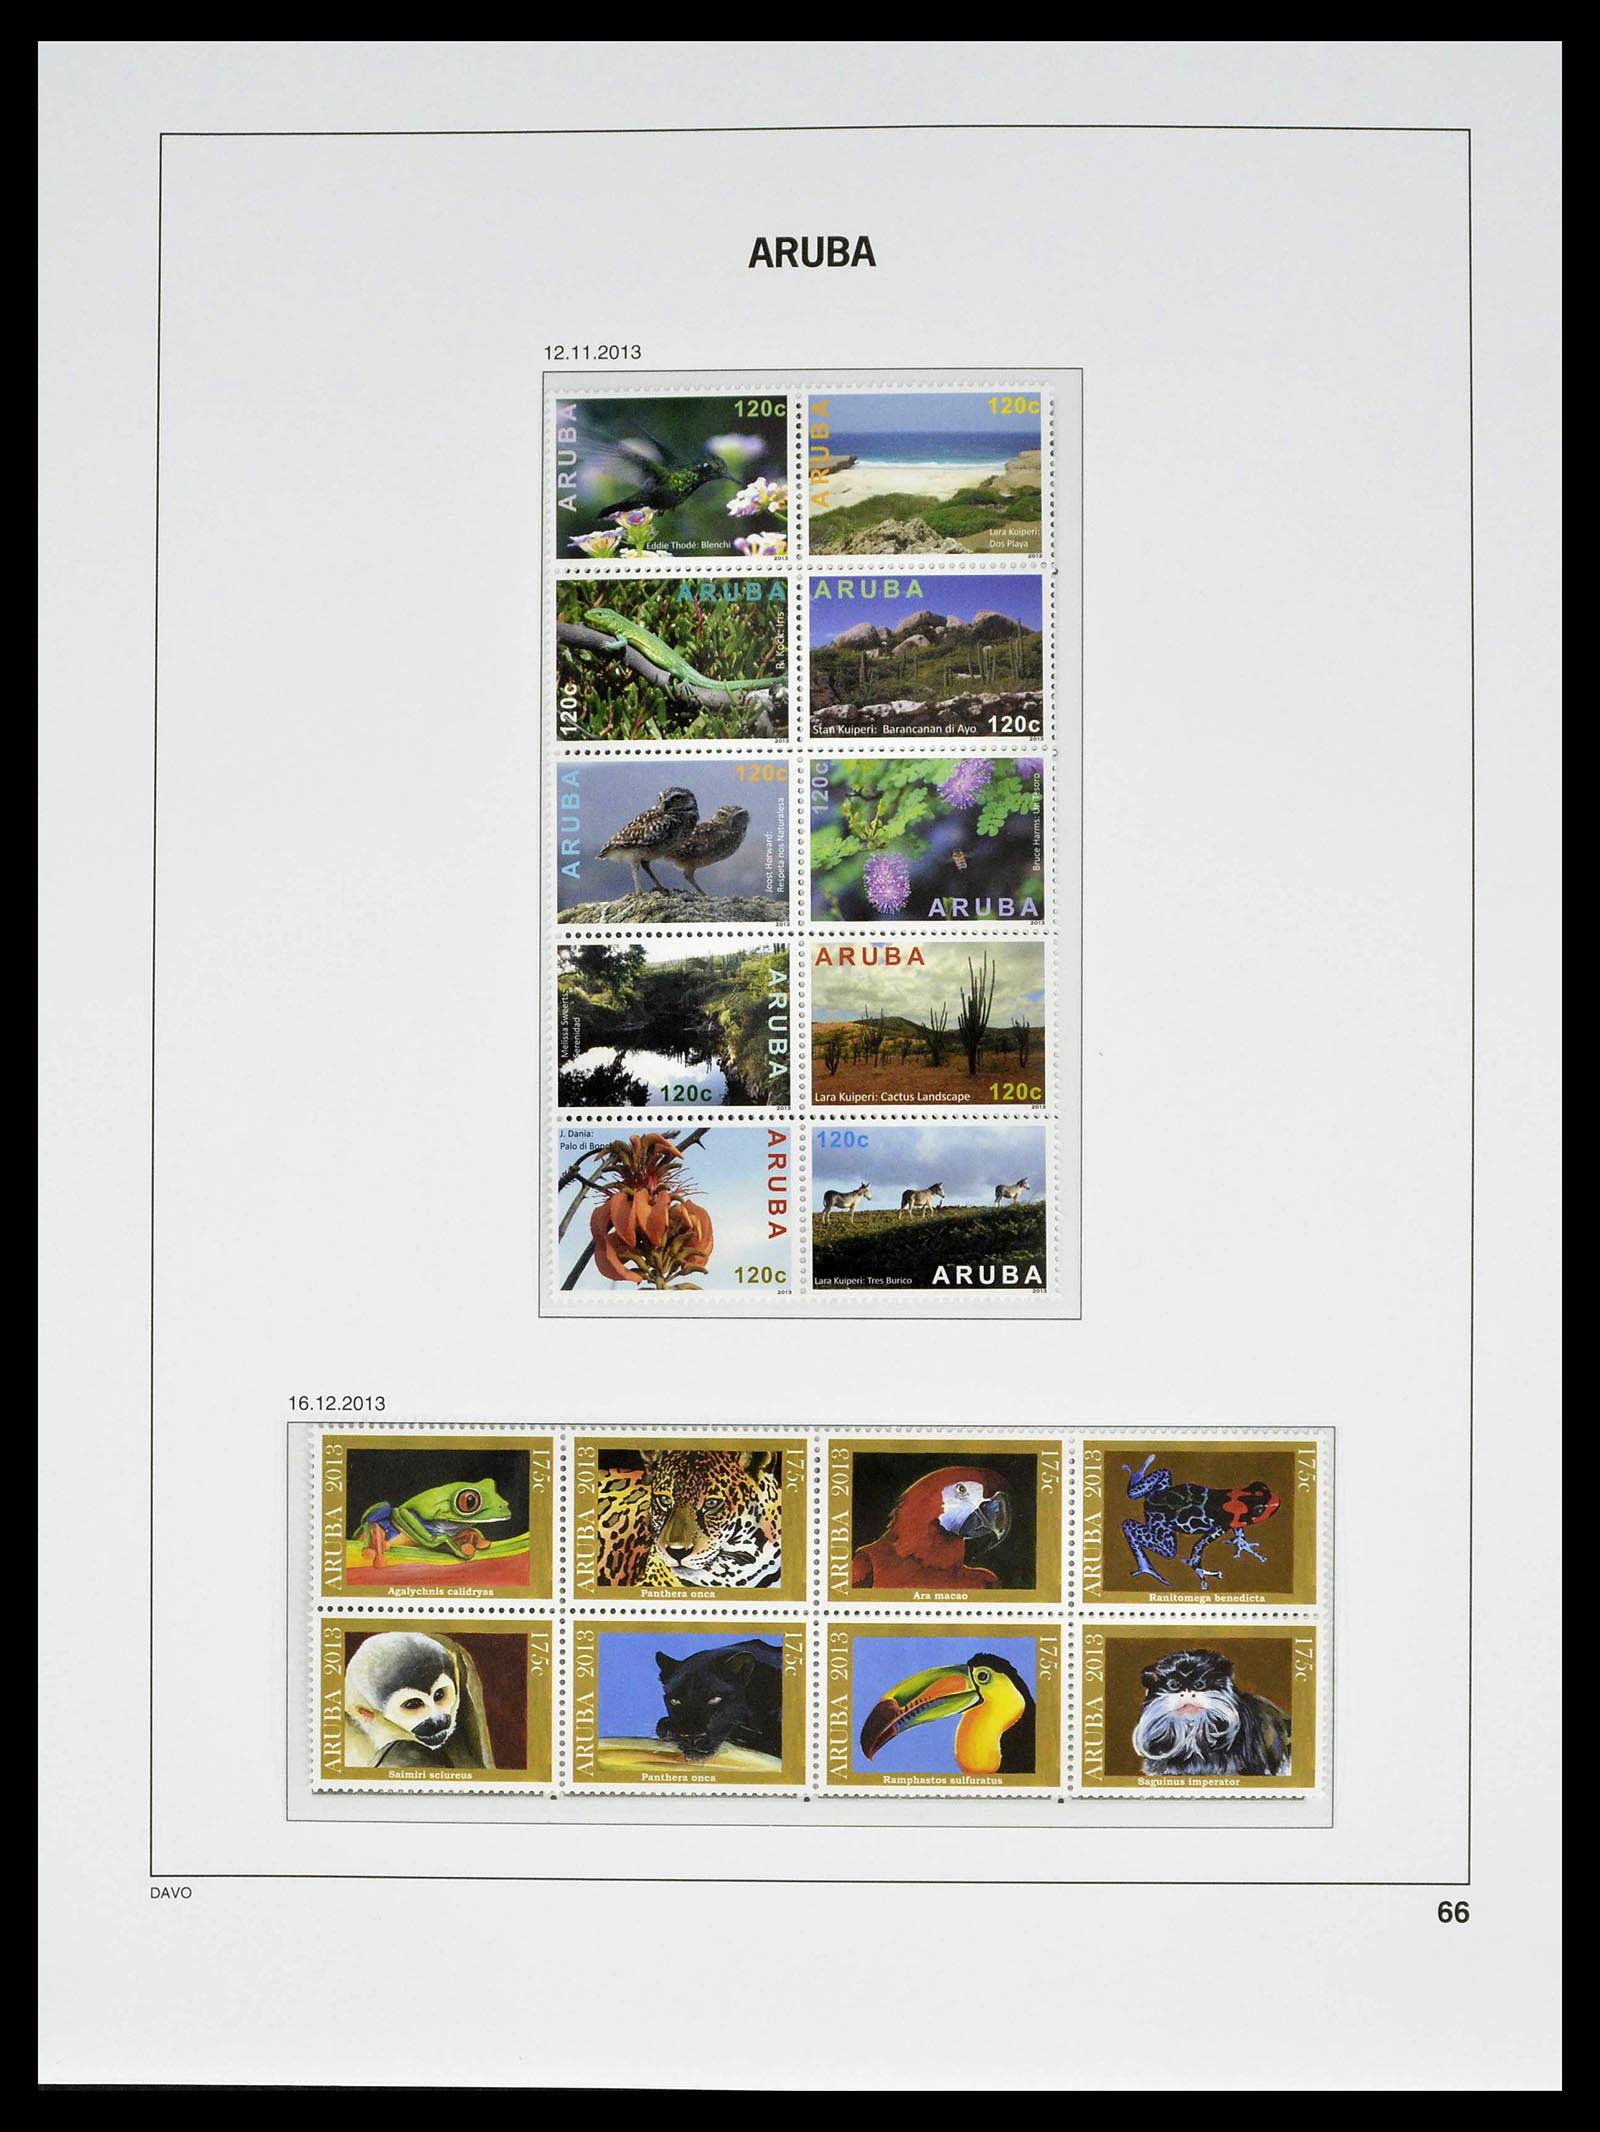 39361 0066 - Stamp collection 39361 Aruba 1986-2013.